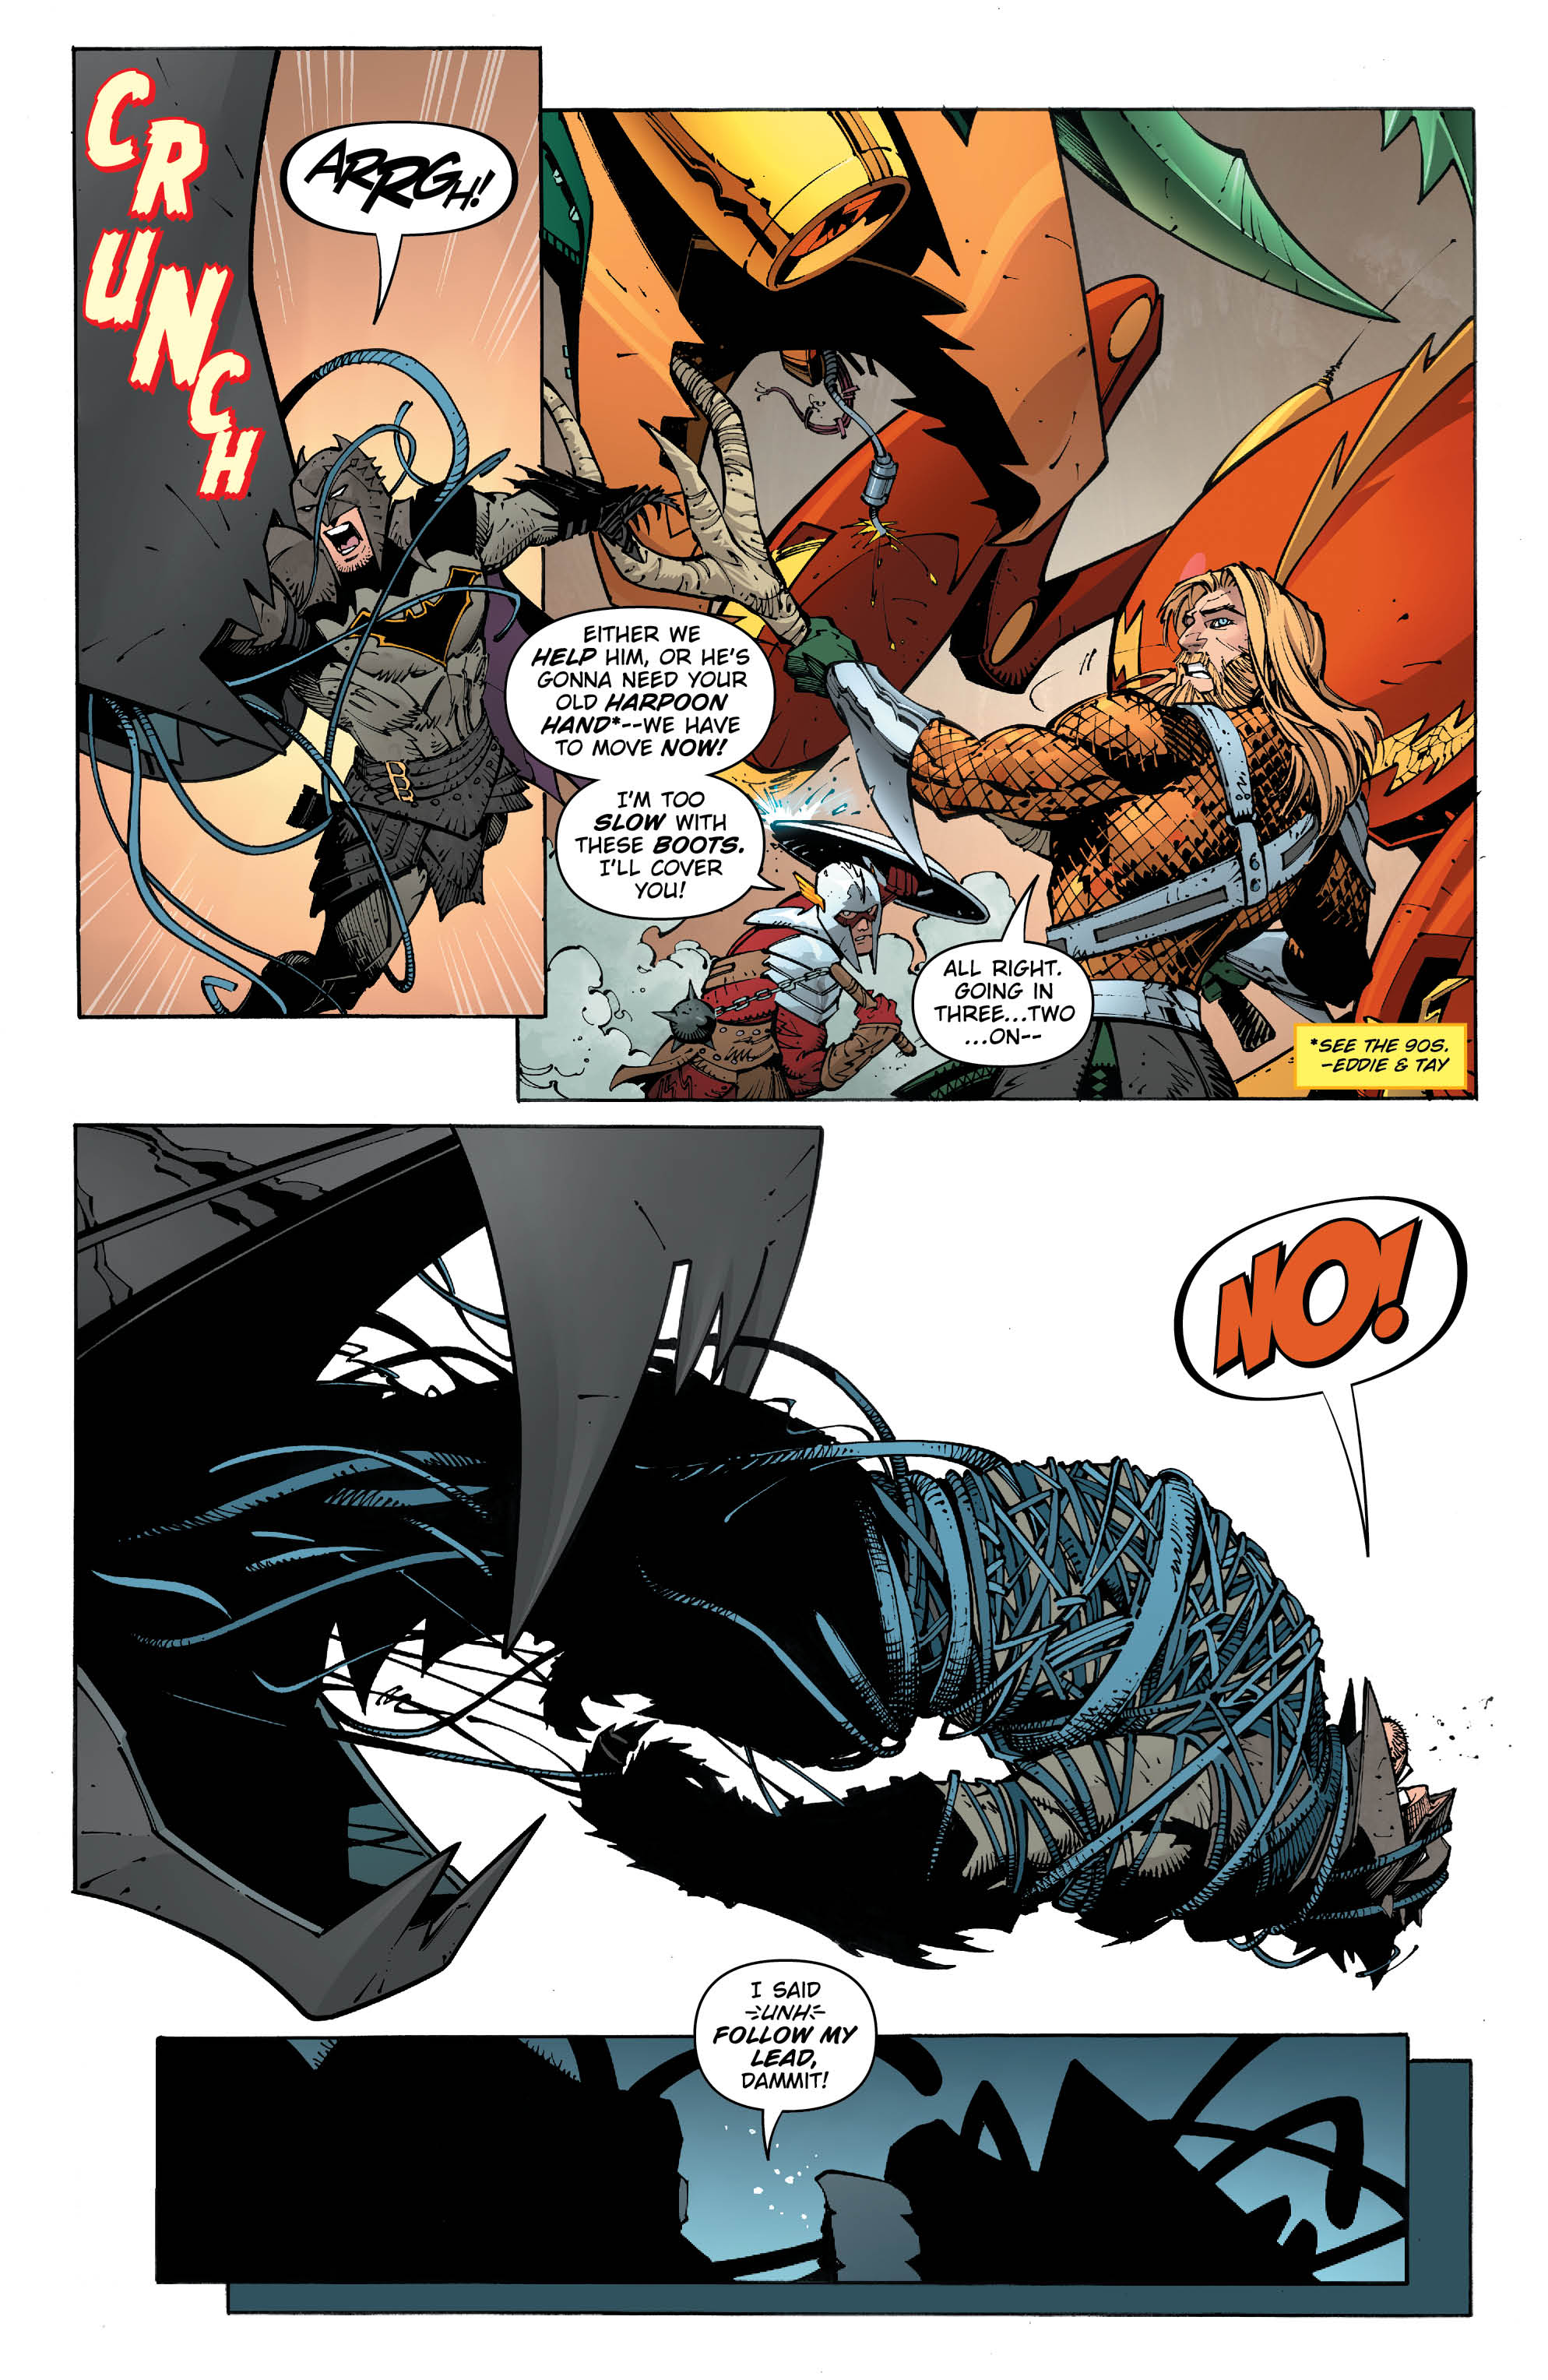 Metal Page 7 - DC Comics News